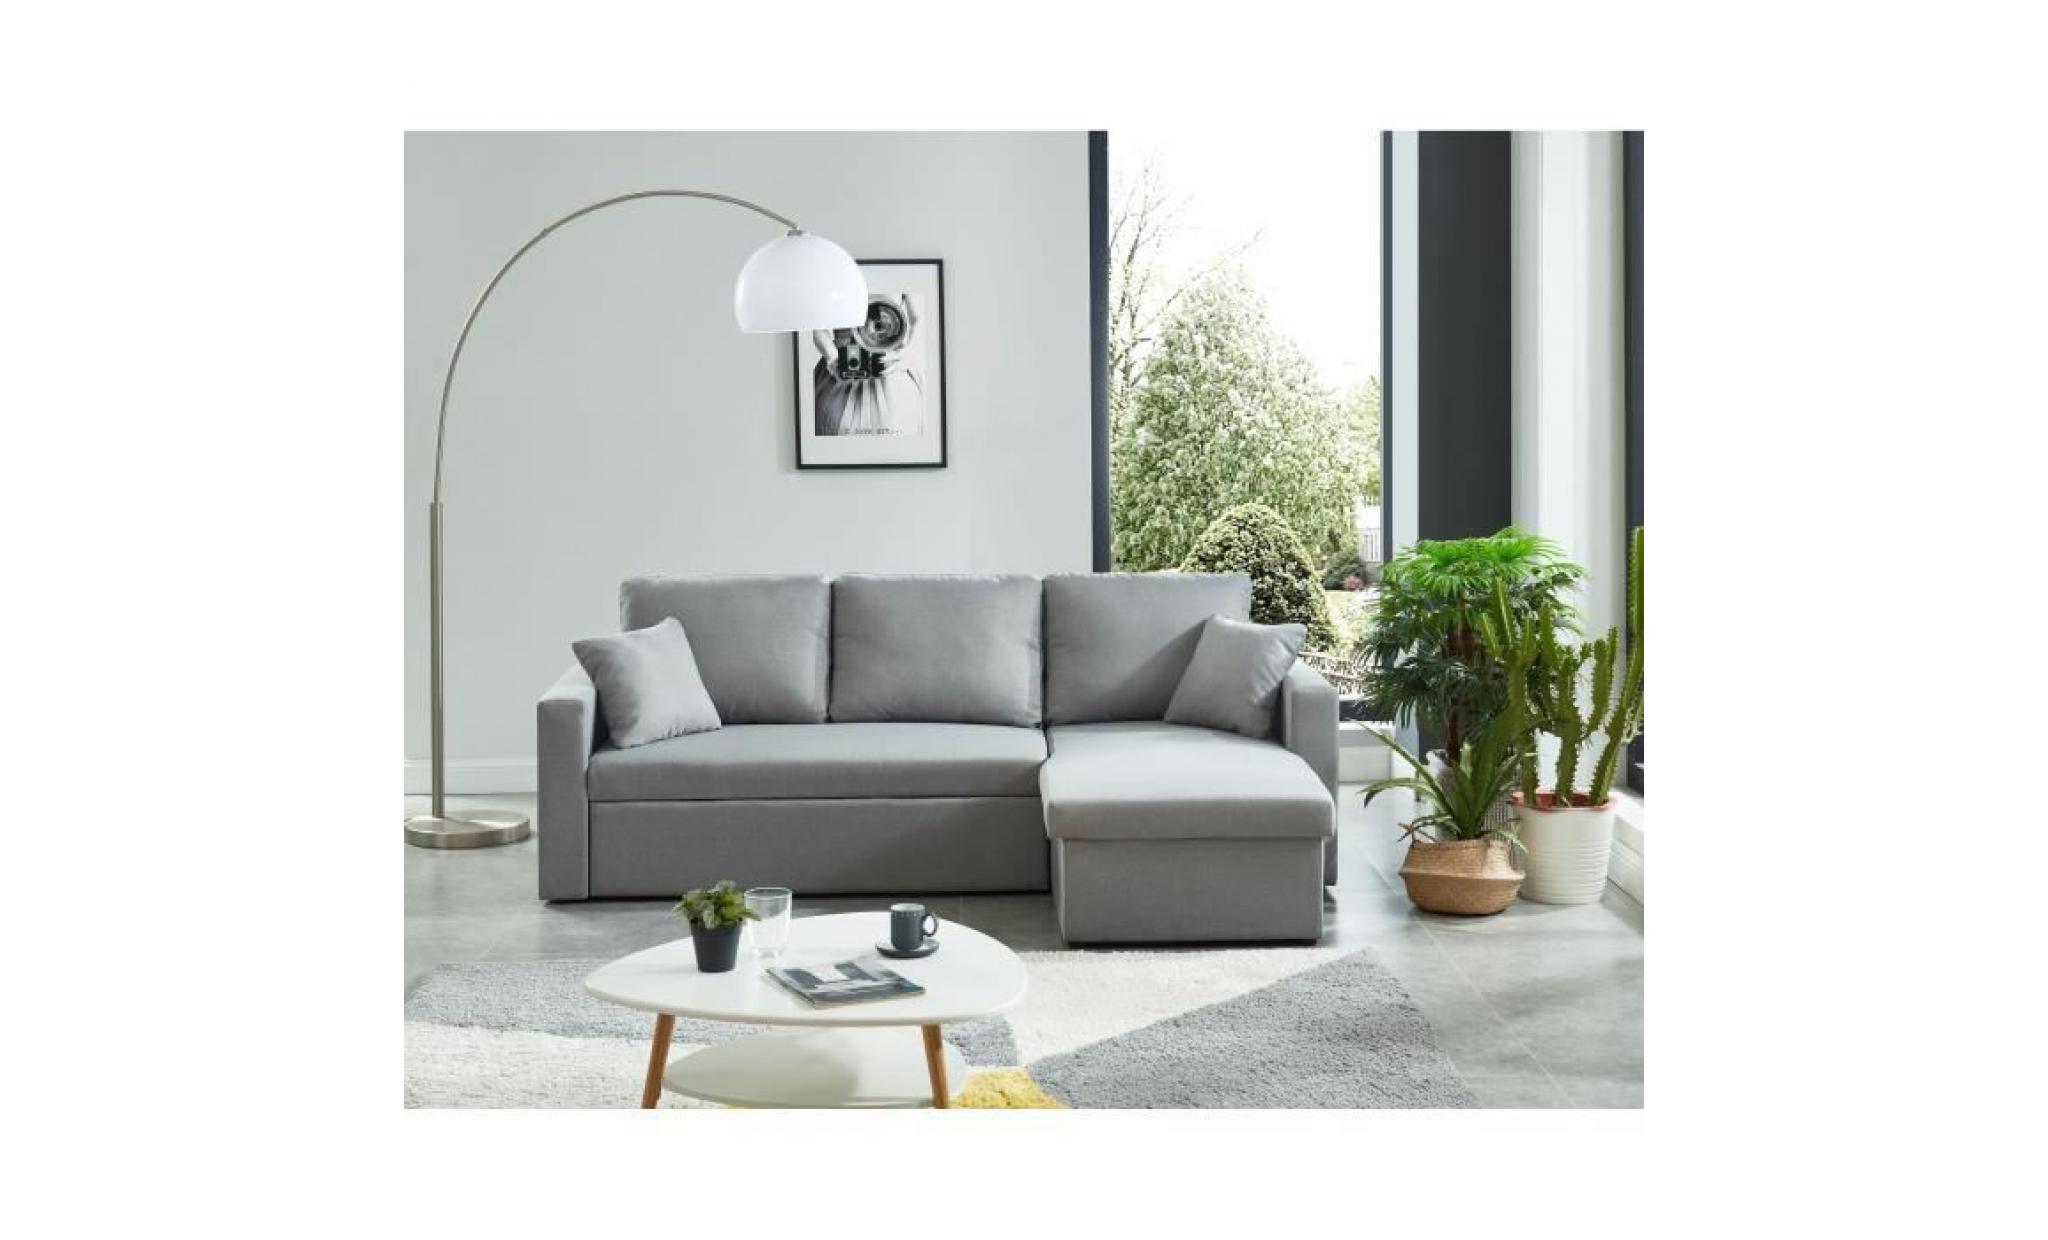 william canapé d'angle réversible convertible 3 places   tissu gris et simili blanc   contemporain   l 223 x p 146 cm pas cher